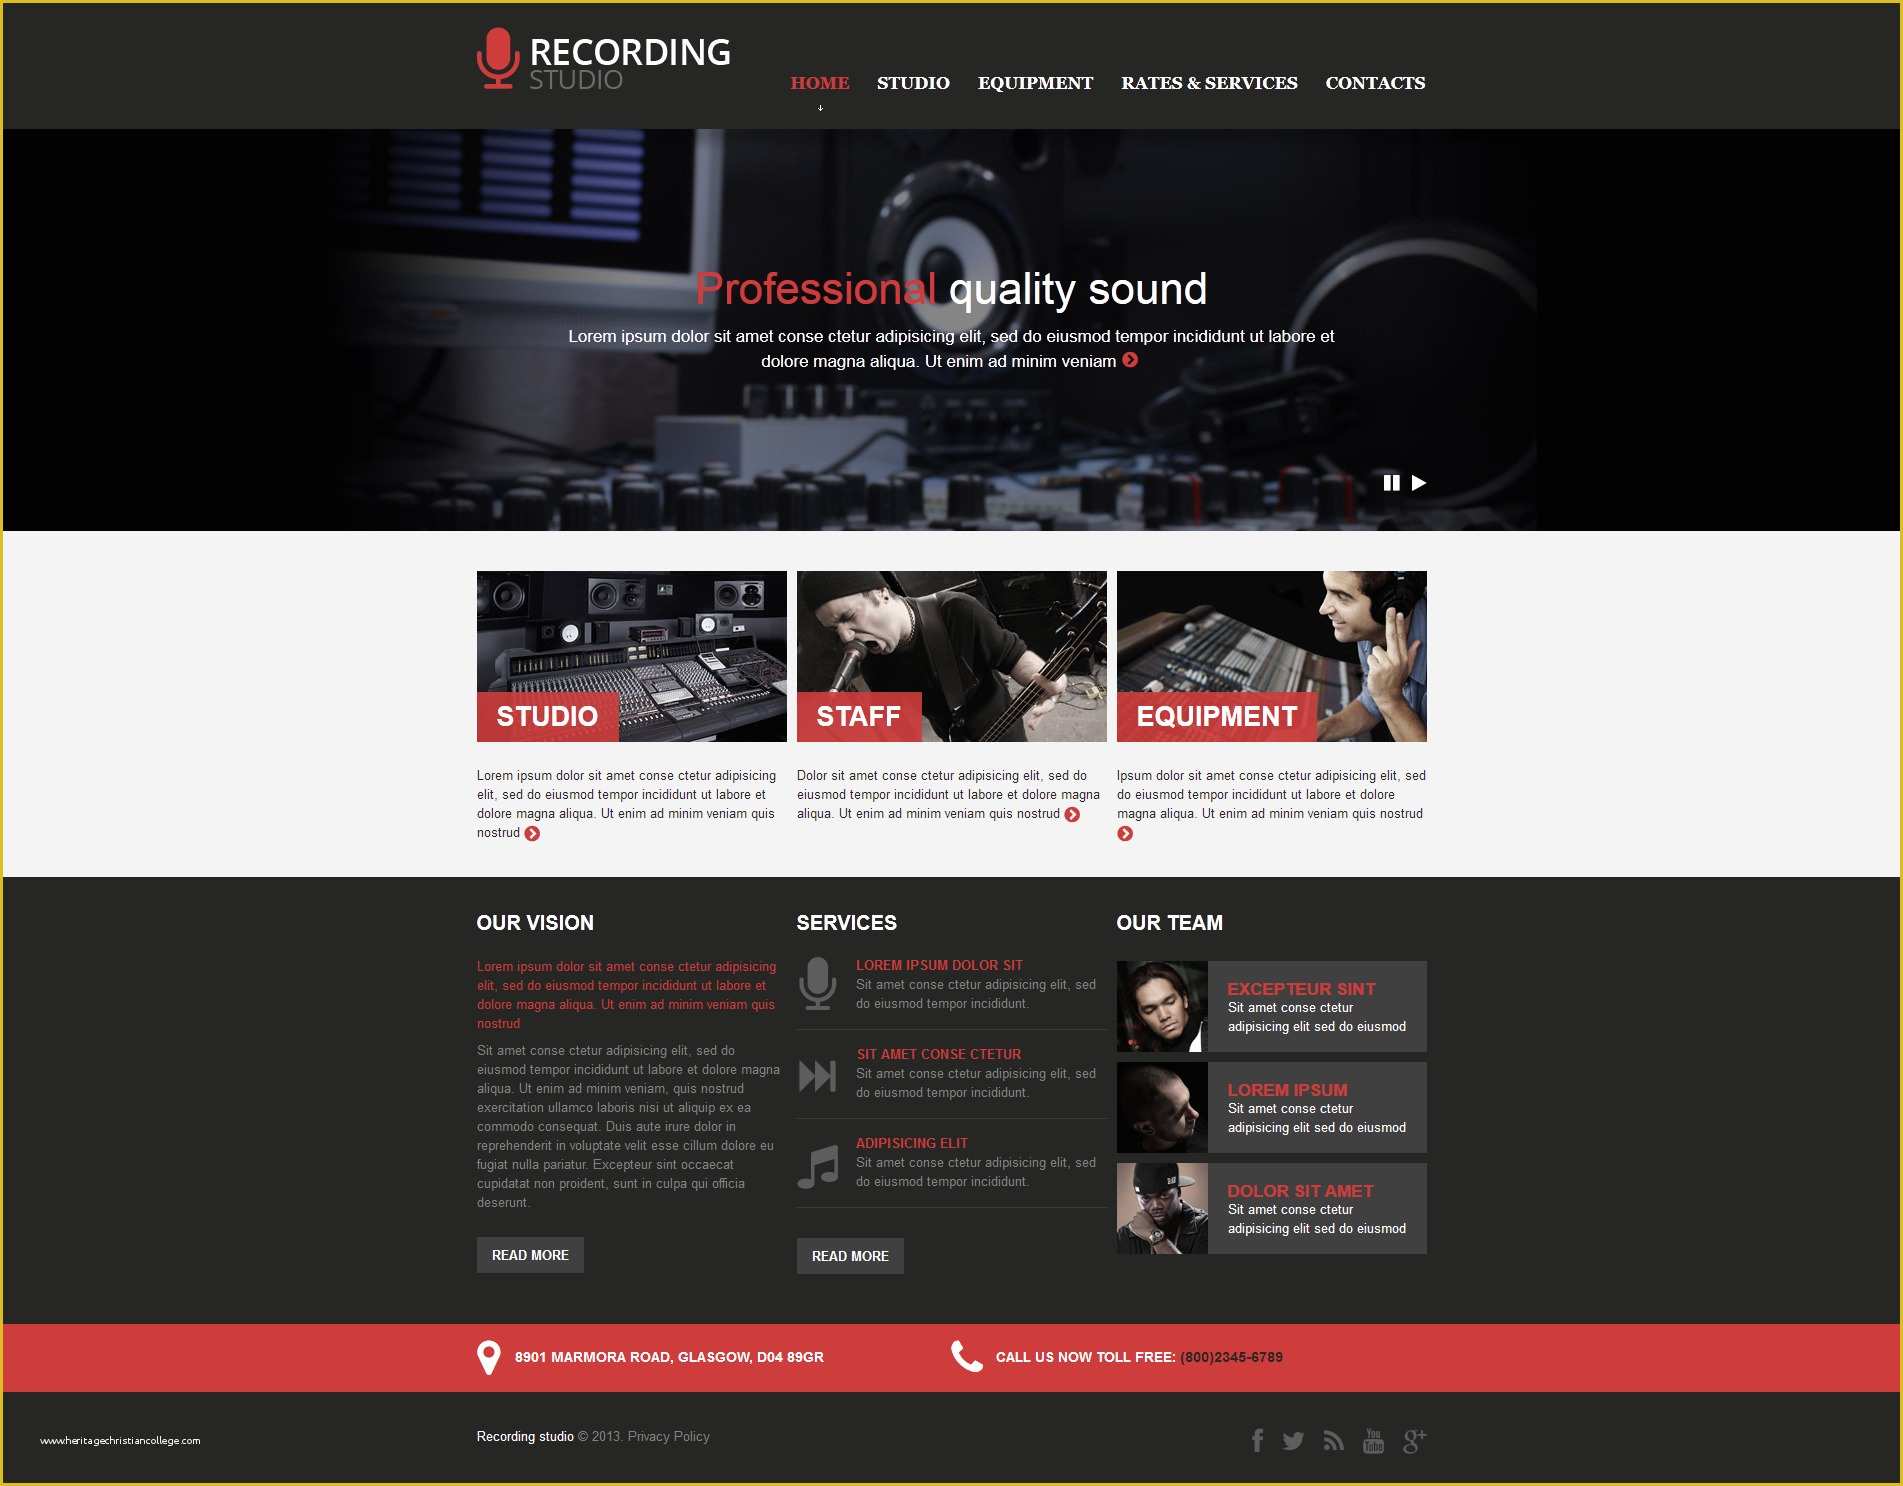 Photo Studio Website Templates Free Download Of Recording Studio Responsive Website Template